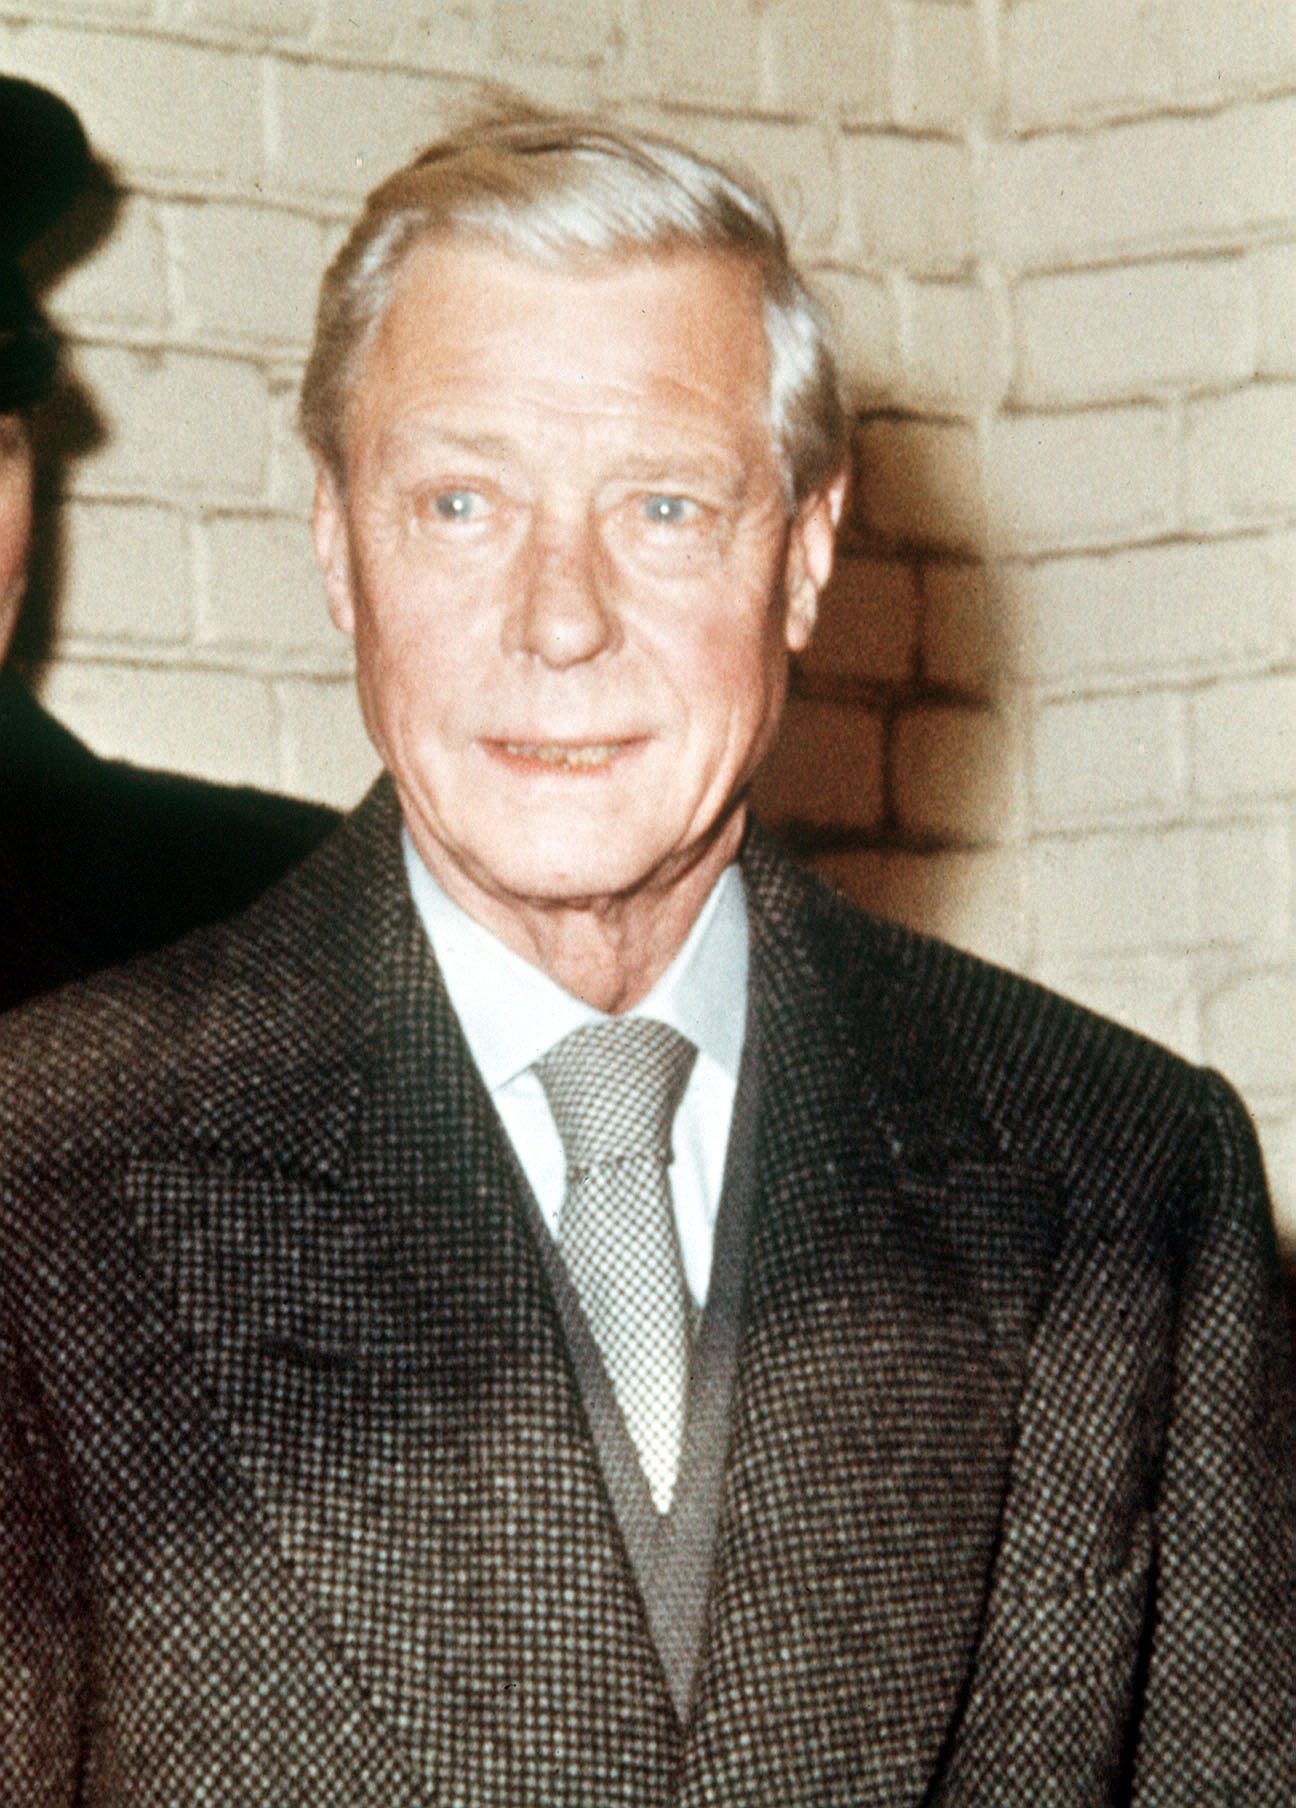 الملك إدوارد الثامن في صورة خلال زيارة لمحطة فيكتوريا في بريطانيا عام 1963.